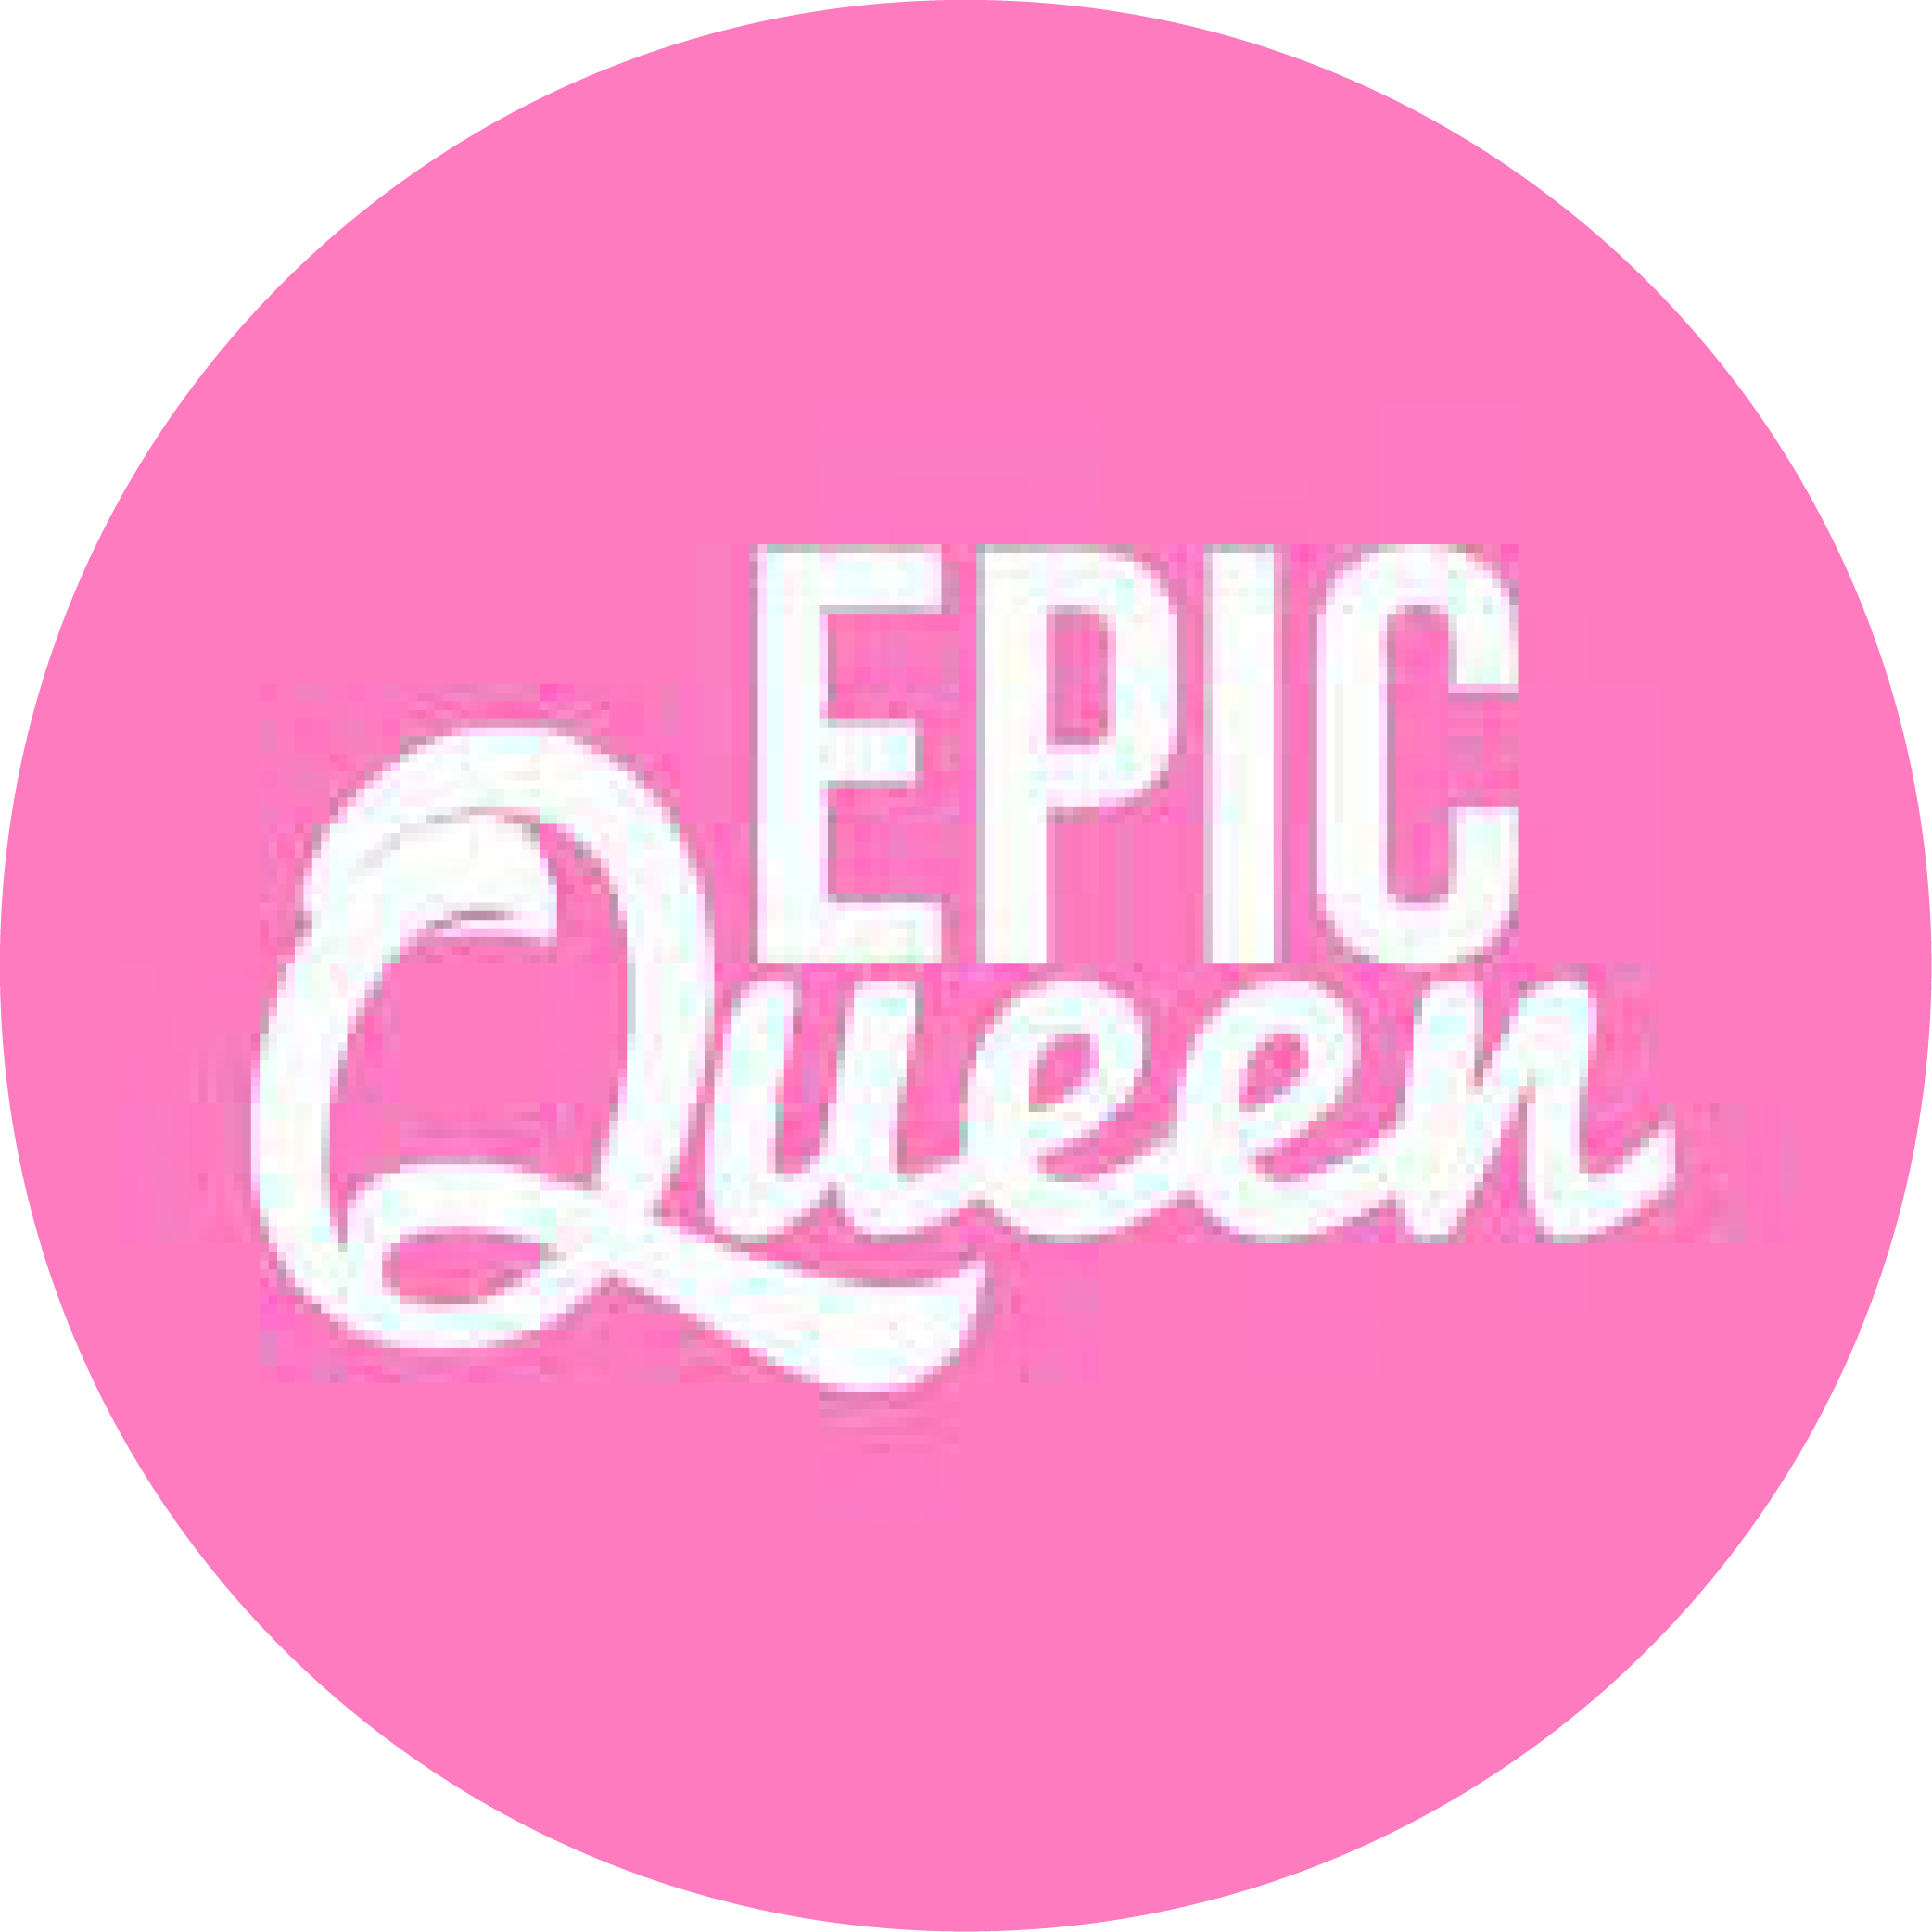 Epic Queen